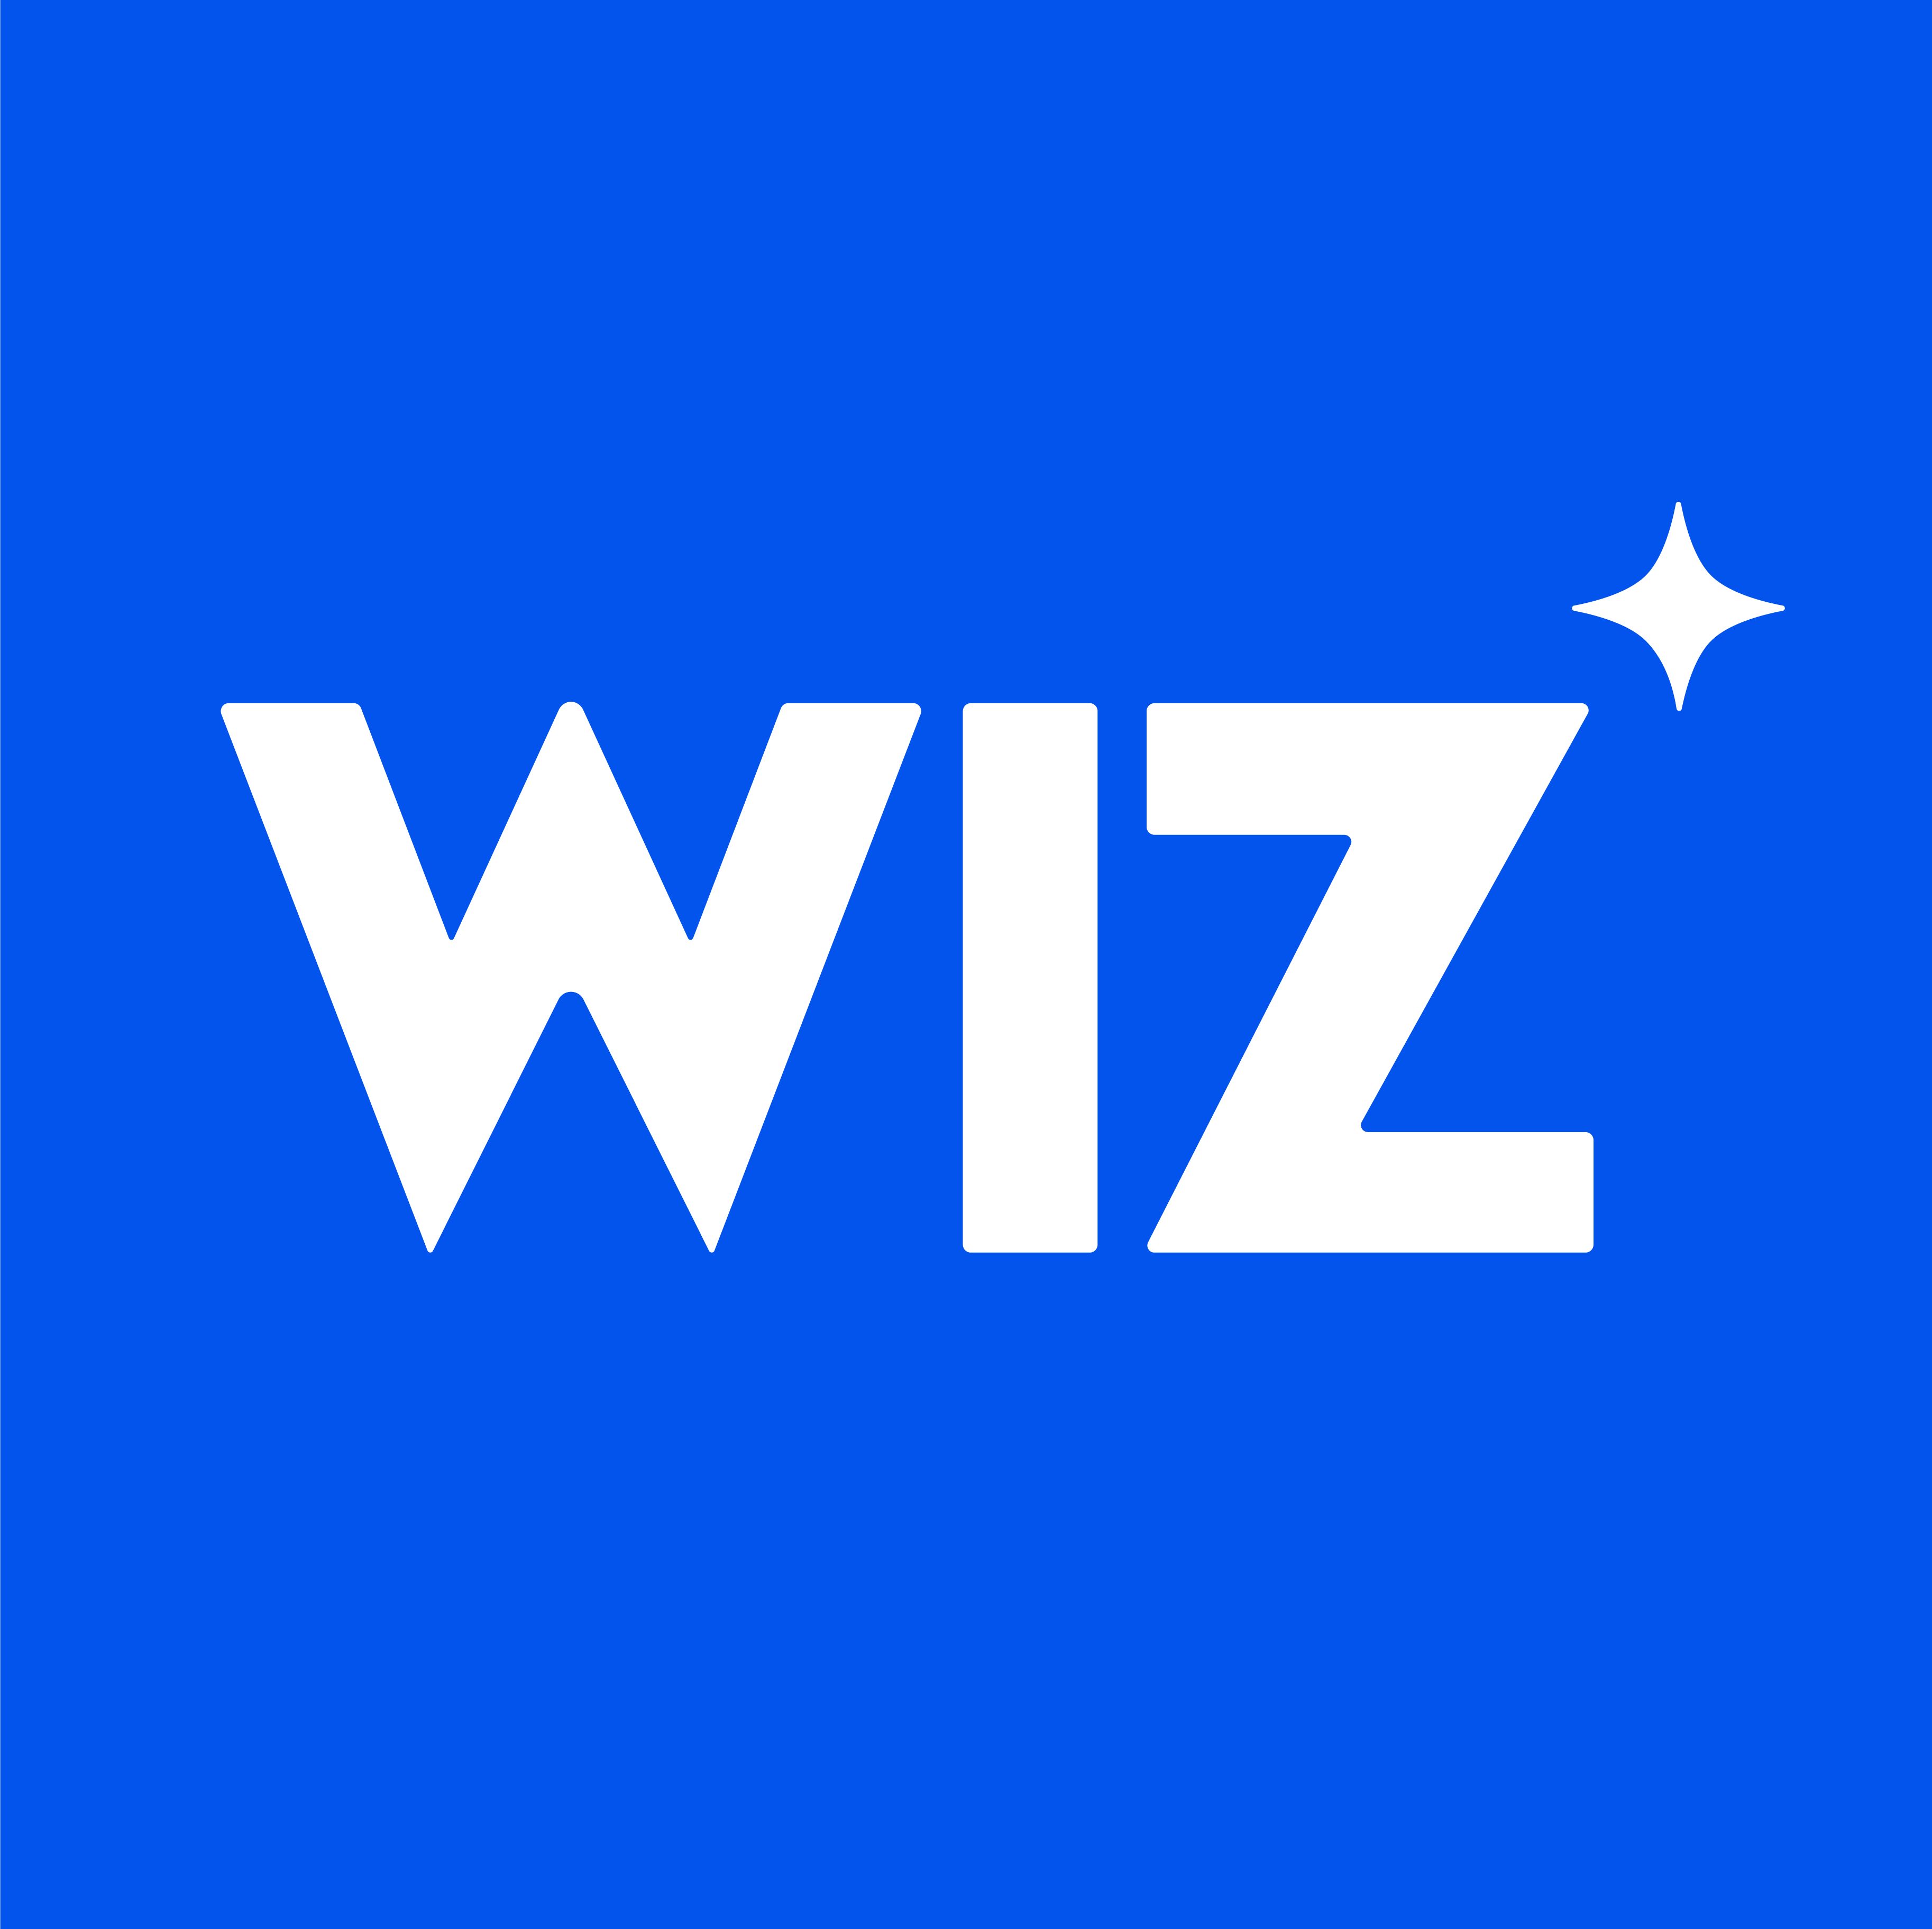 The Wiz logo.